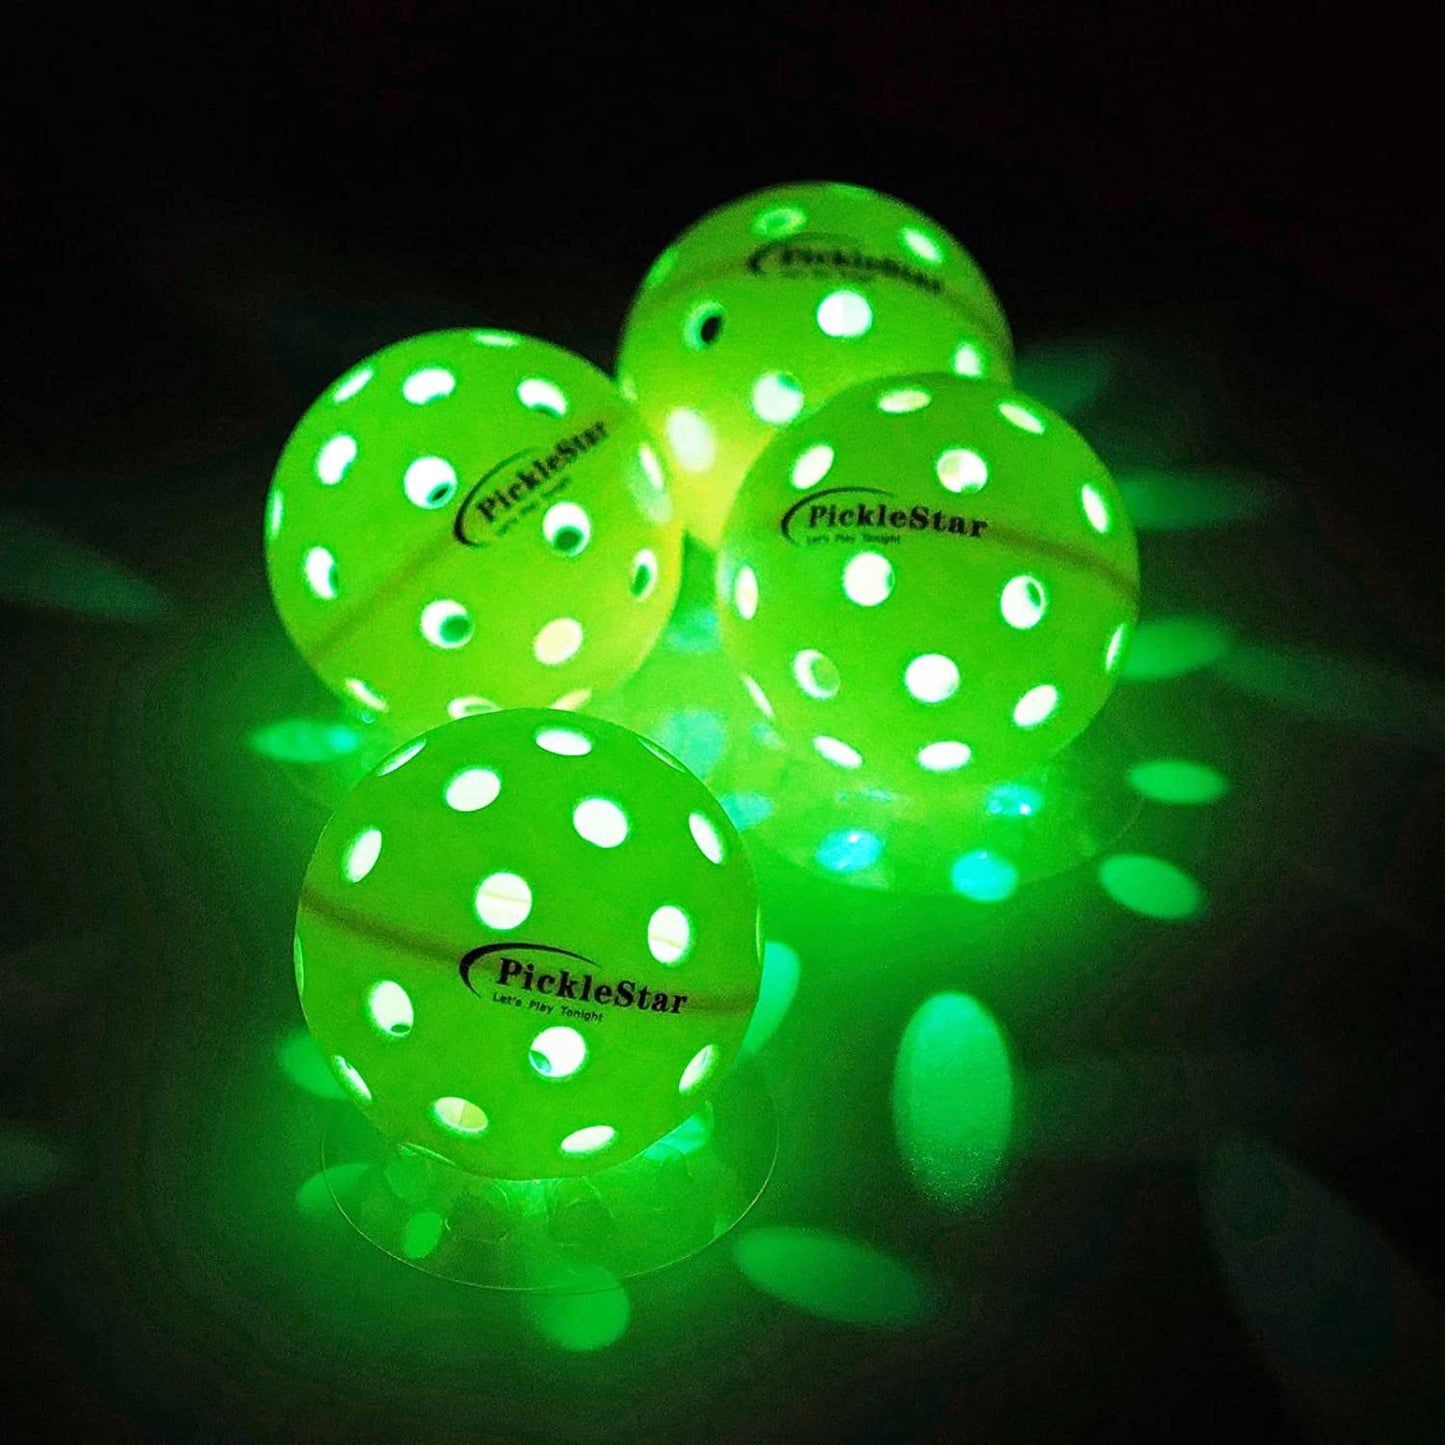 Picklestar LED Light up Pickleball Balls, Glow in the Dark Pickleball Balls, Offcial Size Outdoorpickleballs with Light 4 Pack LED Light up Pickle Balls, Unique Gift for Pickleball Lovers